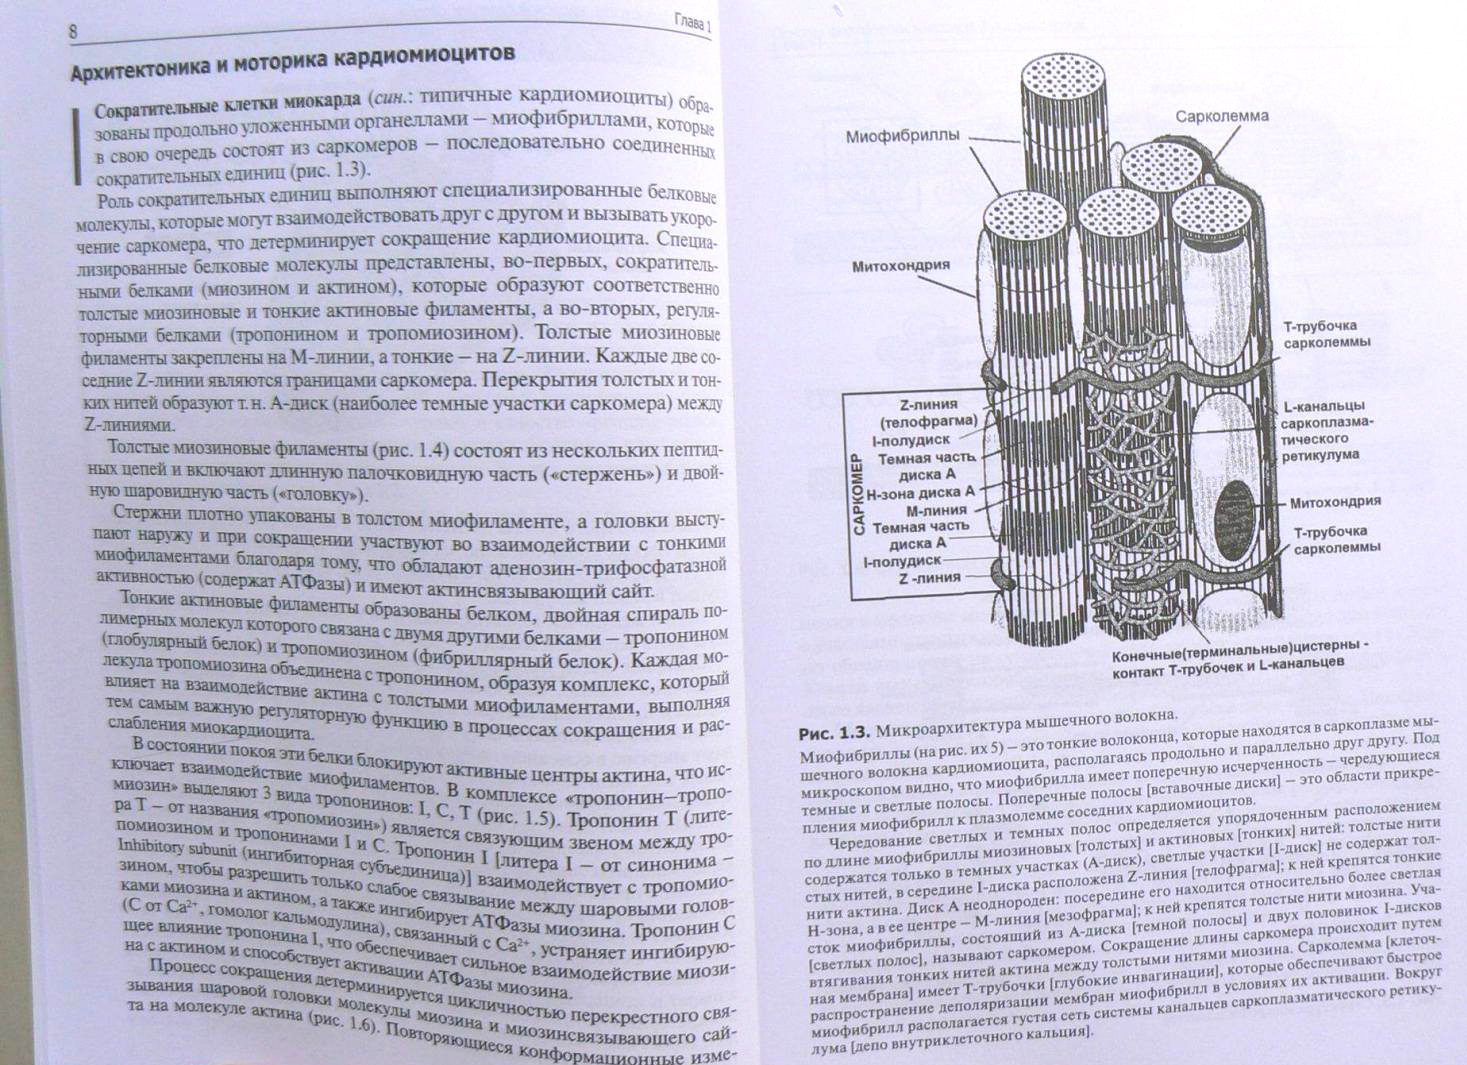 Пример страницы из книги "Патофизиология сердца и сосудов" - Войнов В. А.